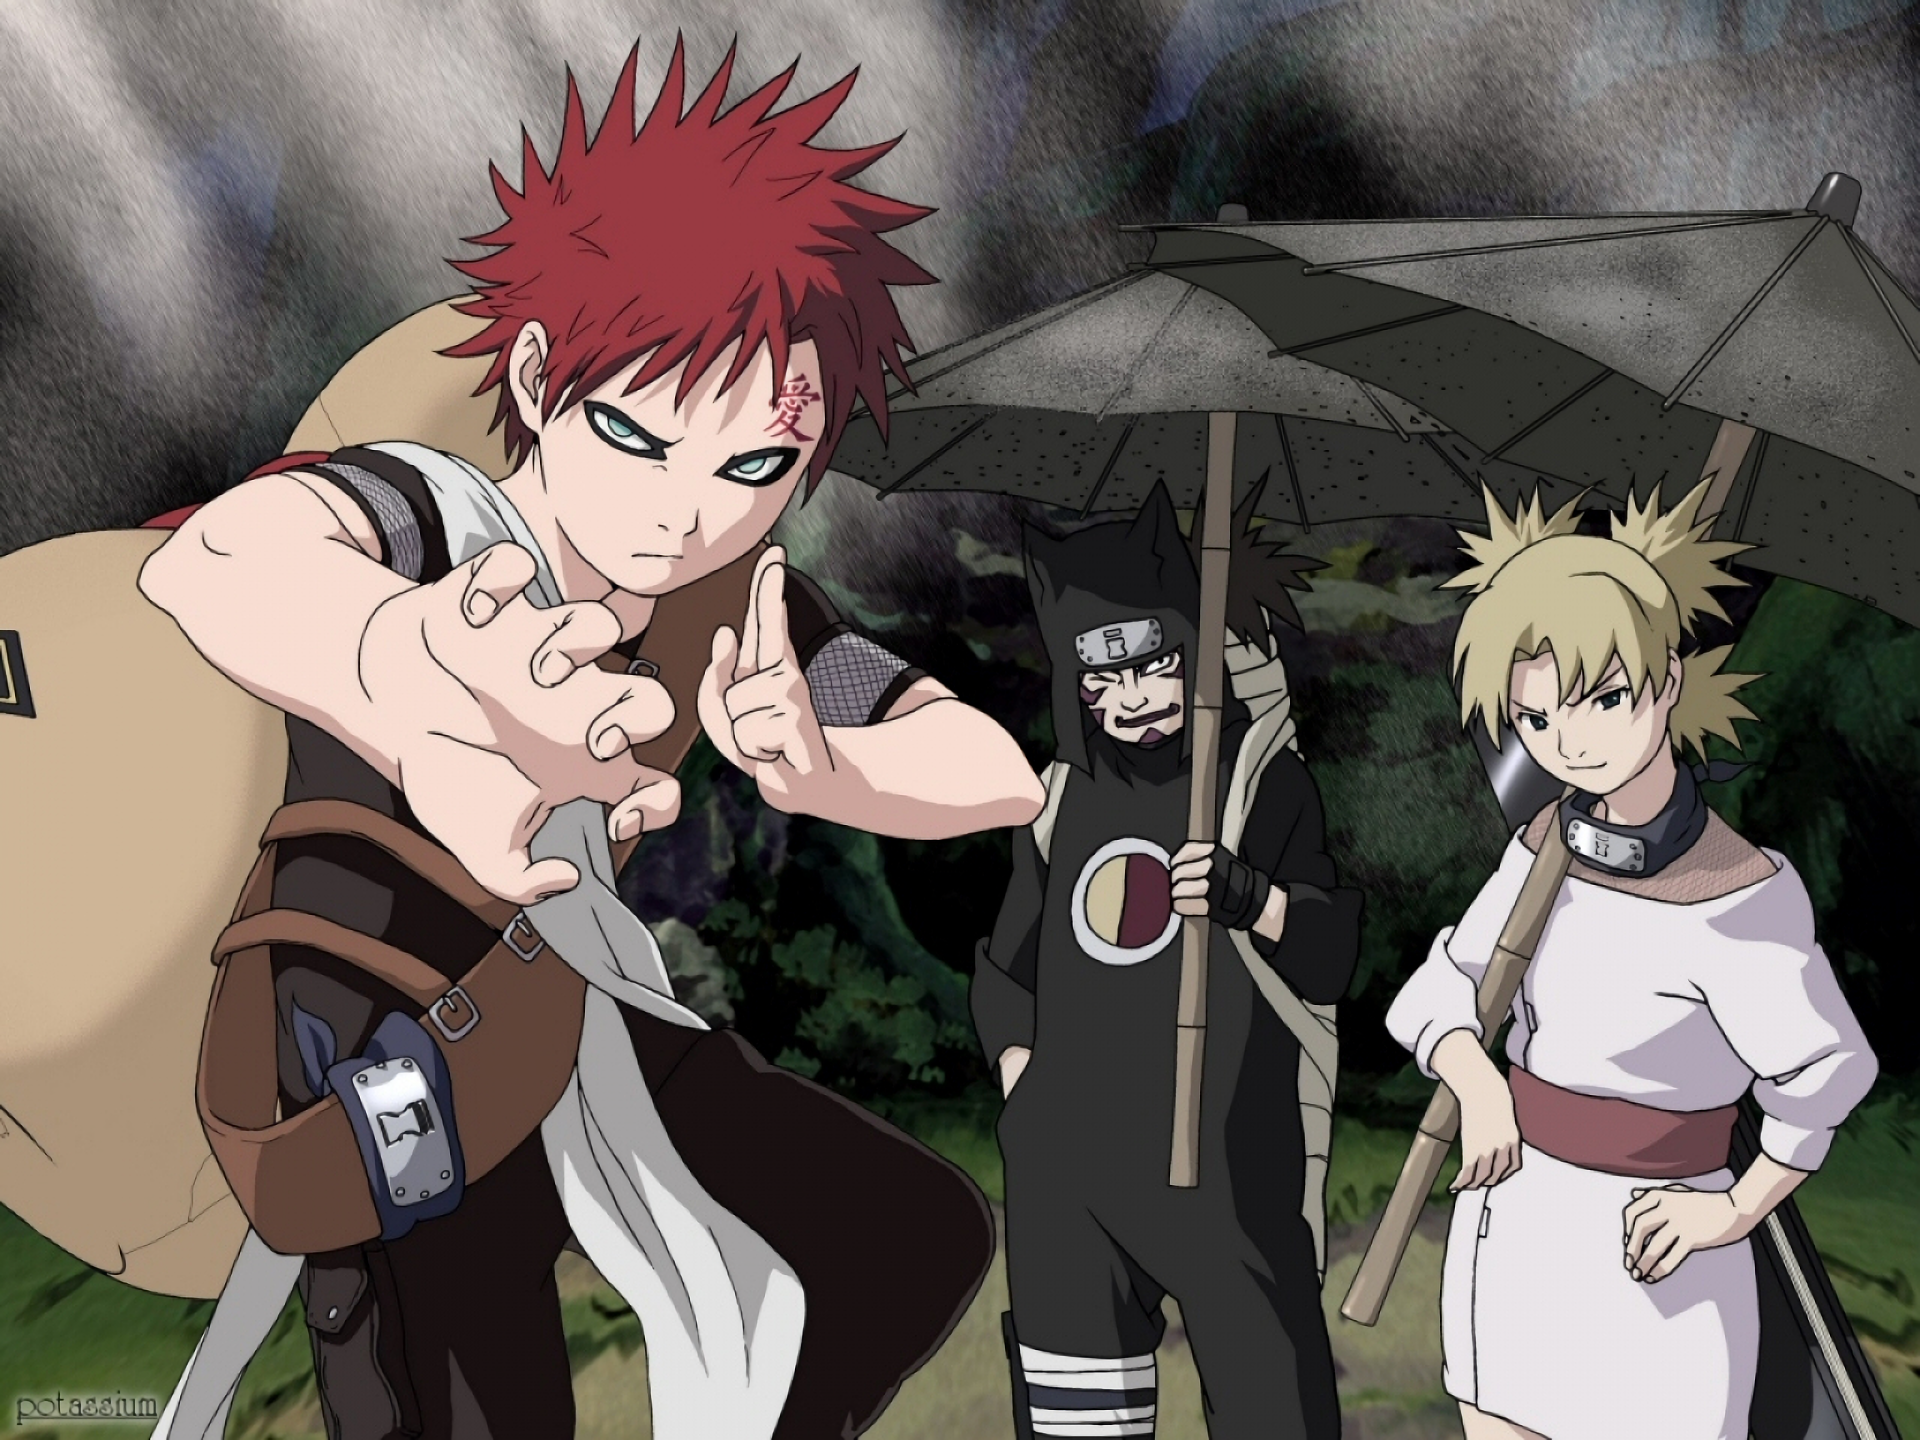 Gaara, Kankuro, and Temari from Naruto.